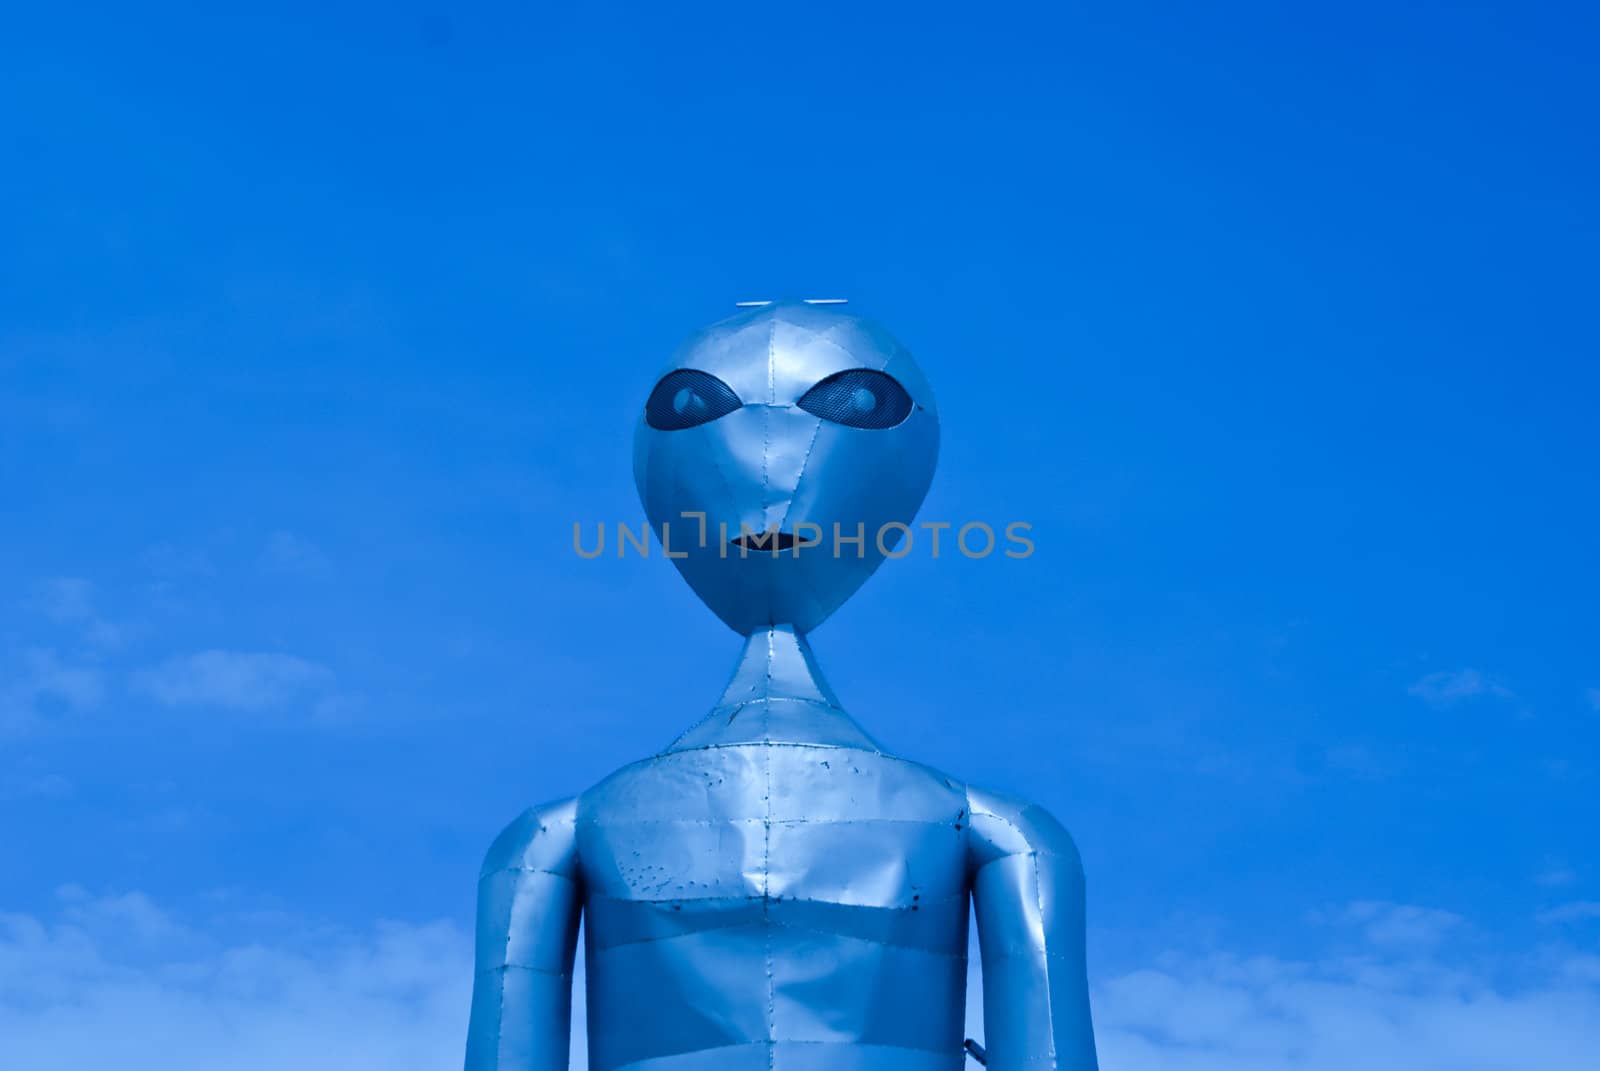 Alien figure in Nevadan desert